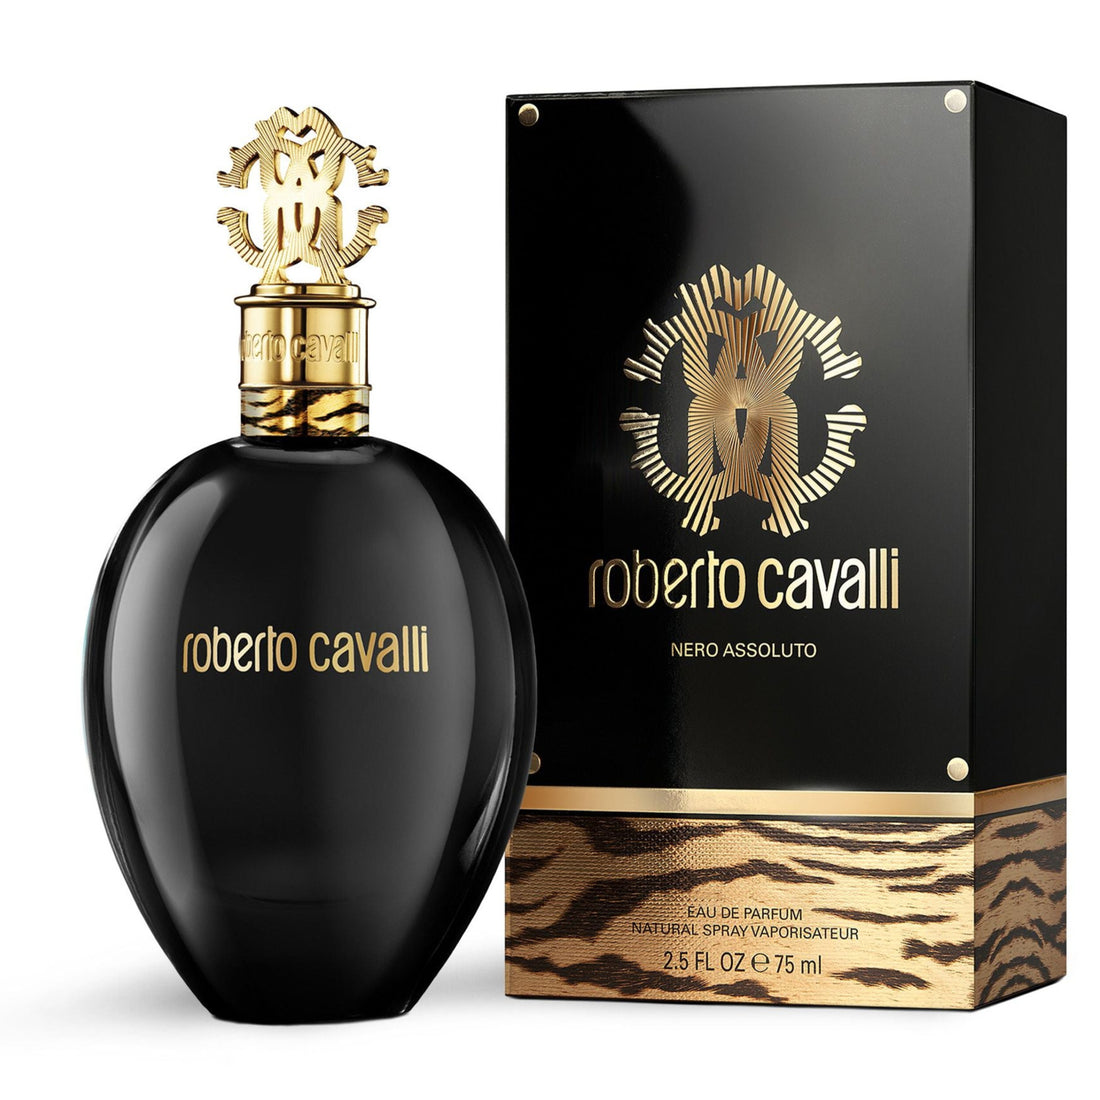 Roberto Cavalli Nero Assoluto For Her Eau de Parfum